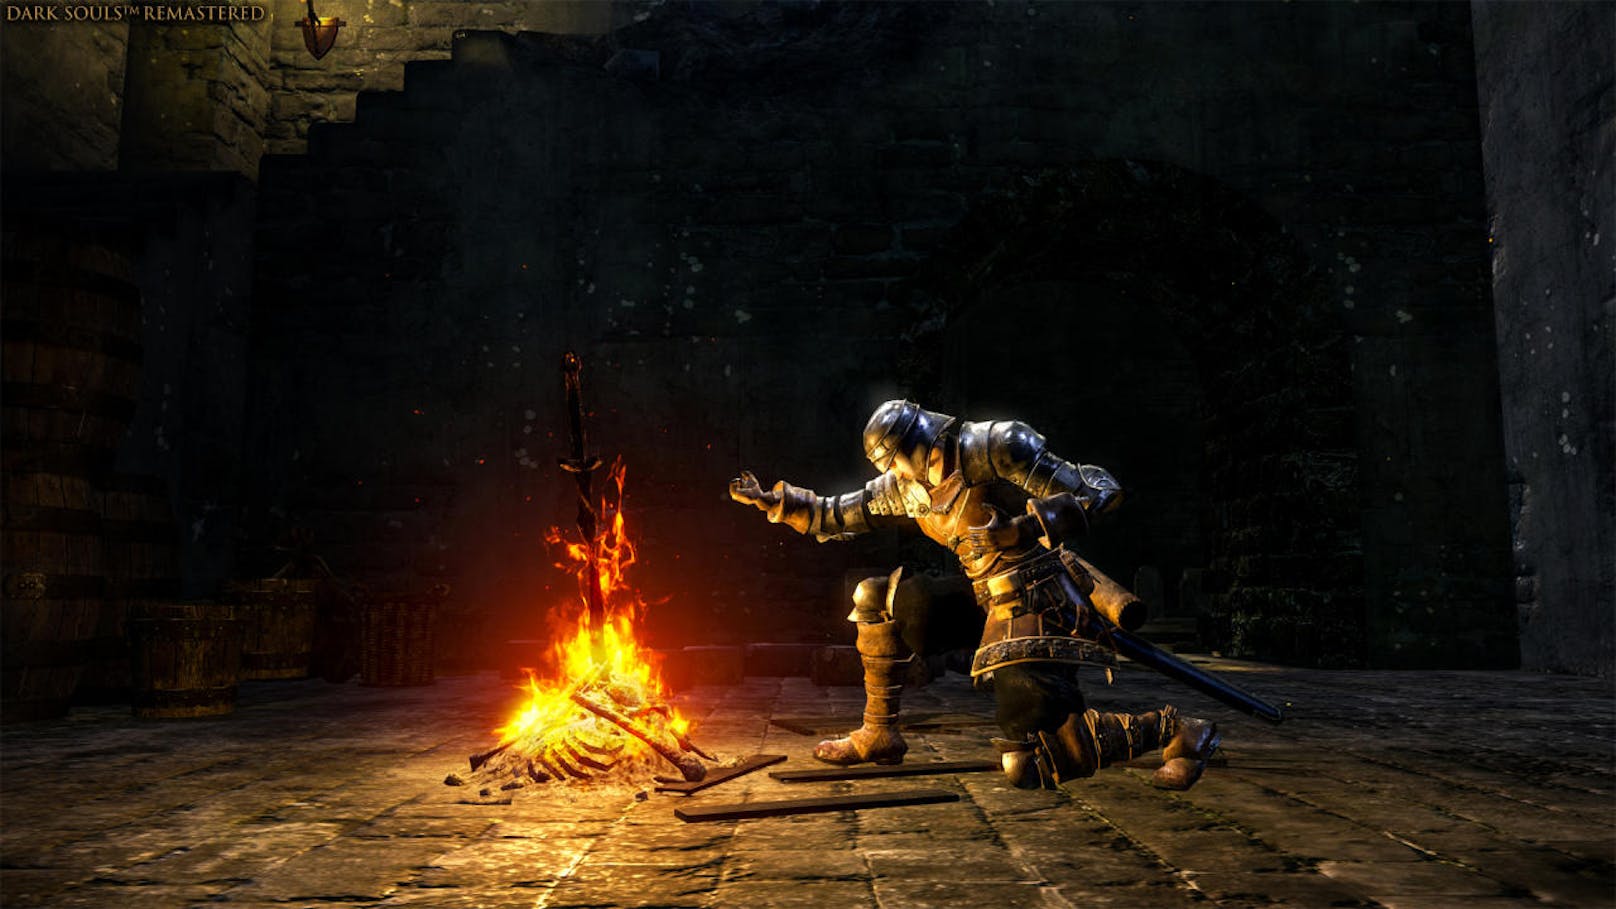 <b>18. Jänner 2019:</b> Ab dem 31. Mai 2019 werden Fans die Möglichkeit haben, die Dark Souls: Trilogy Collector's Edition mit allen drei Dark Souls-Spielen und zugehörigen DLCs für PlayStation 4 und Xbox One zu erwerben. Die auf 2.000 Exemplare limitierte Collector's Edition ist exklusiv im Store von Bandai Nacmo Entertainment Europe vorbestellbar und enthält: Dark Souls Remastered, Dark Souls II: Scholar of The First Sin, Dark Souls III: The Fire Fades sowie die gesamten DLC-Inhalte für alle drei Spiele, eine hochwertige "Elite-Ritter am Leuchtfeuer"-Statue, den Soundtrack in Form von 6 CDs und das 460-seitige Kompendium. Die Standard Edition der Trilogie mit allen drei Spielen, DLCs und digitalen Soundtracks wird ab dem 1. März 2019 im Handel erhältlich sein.